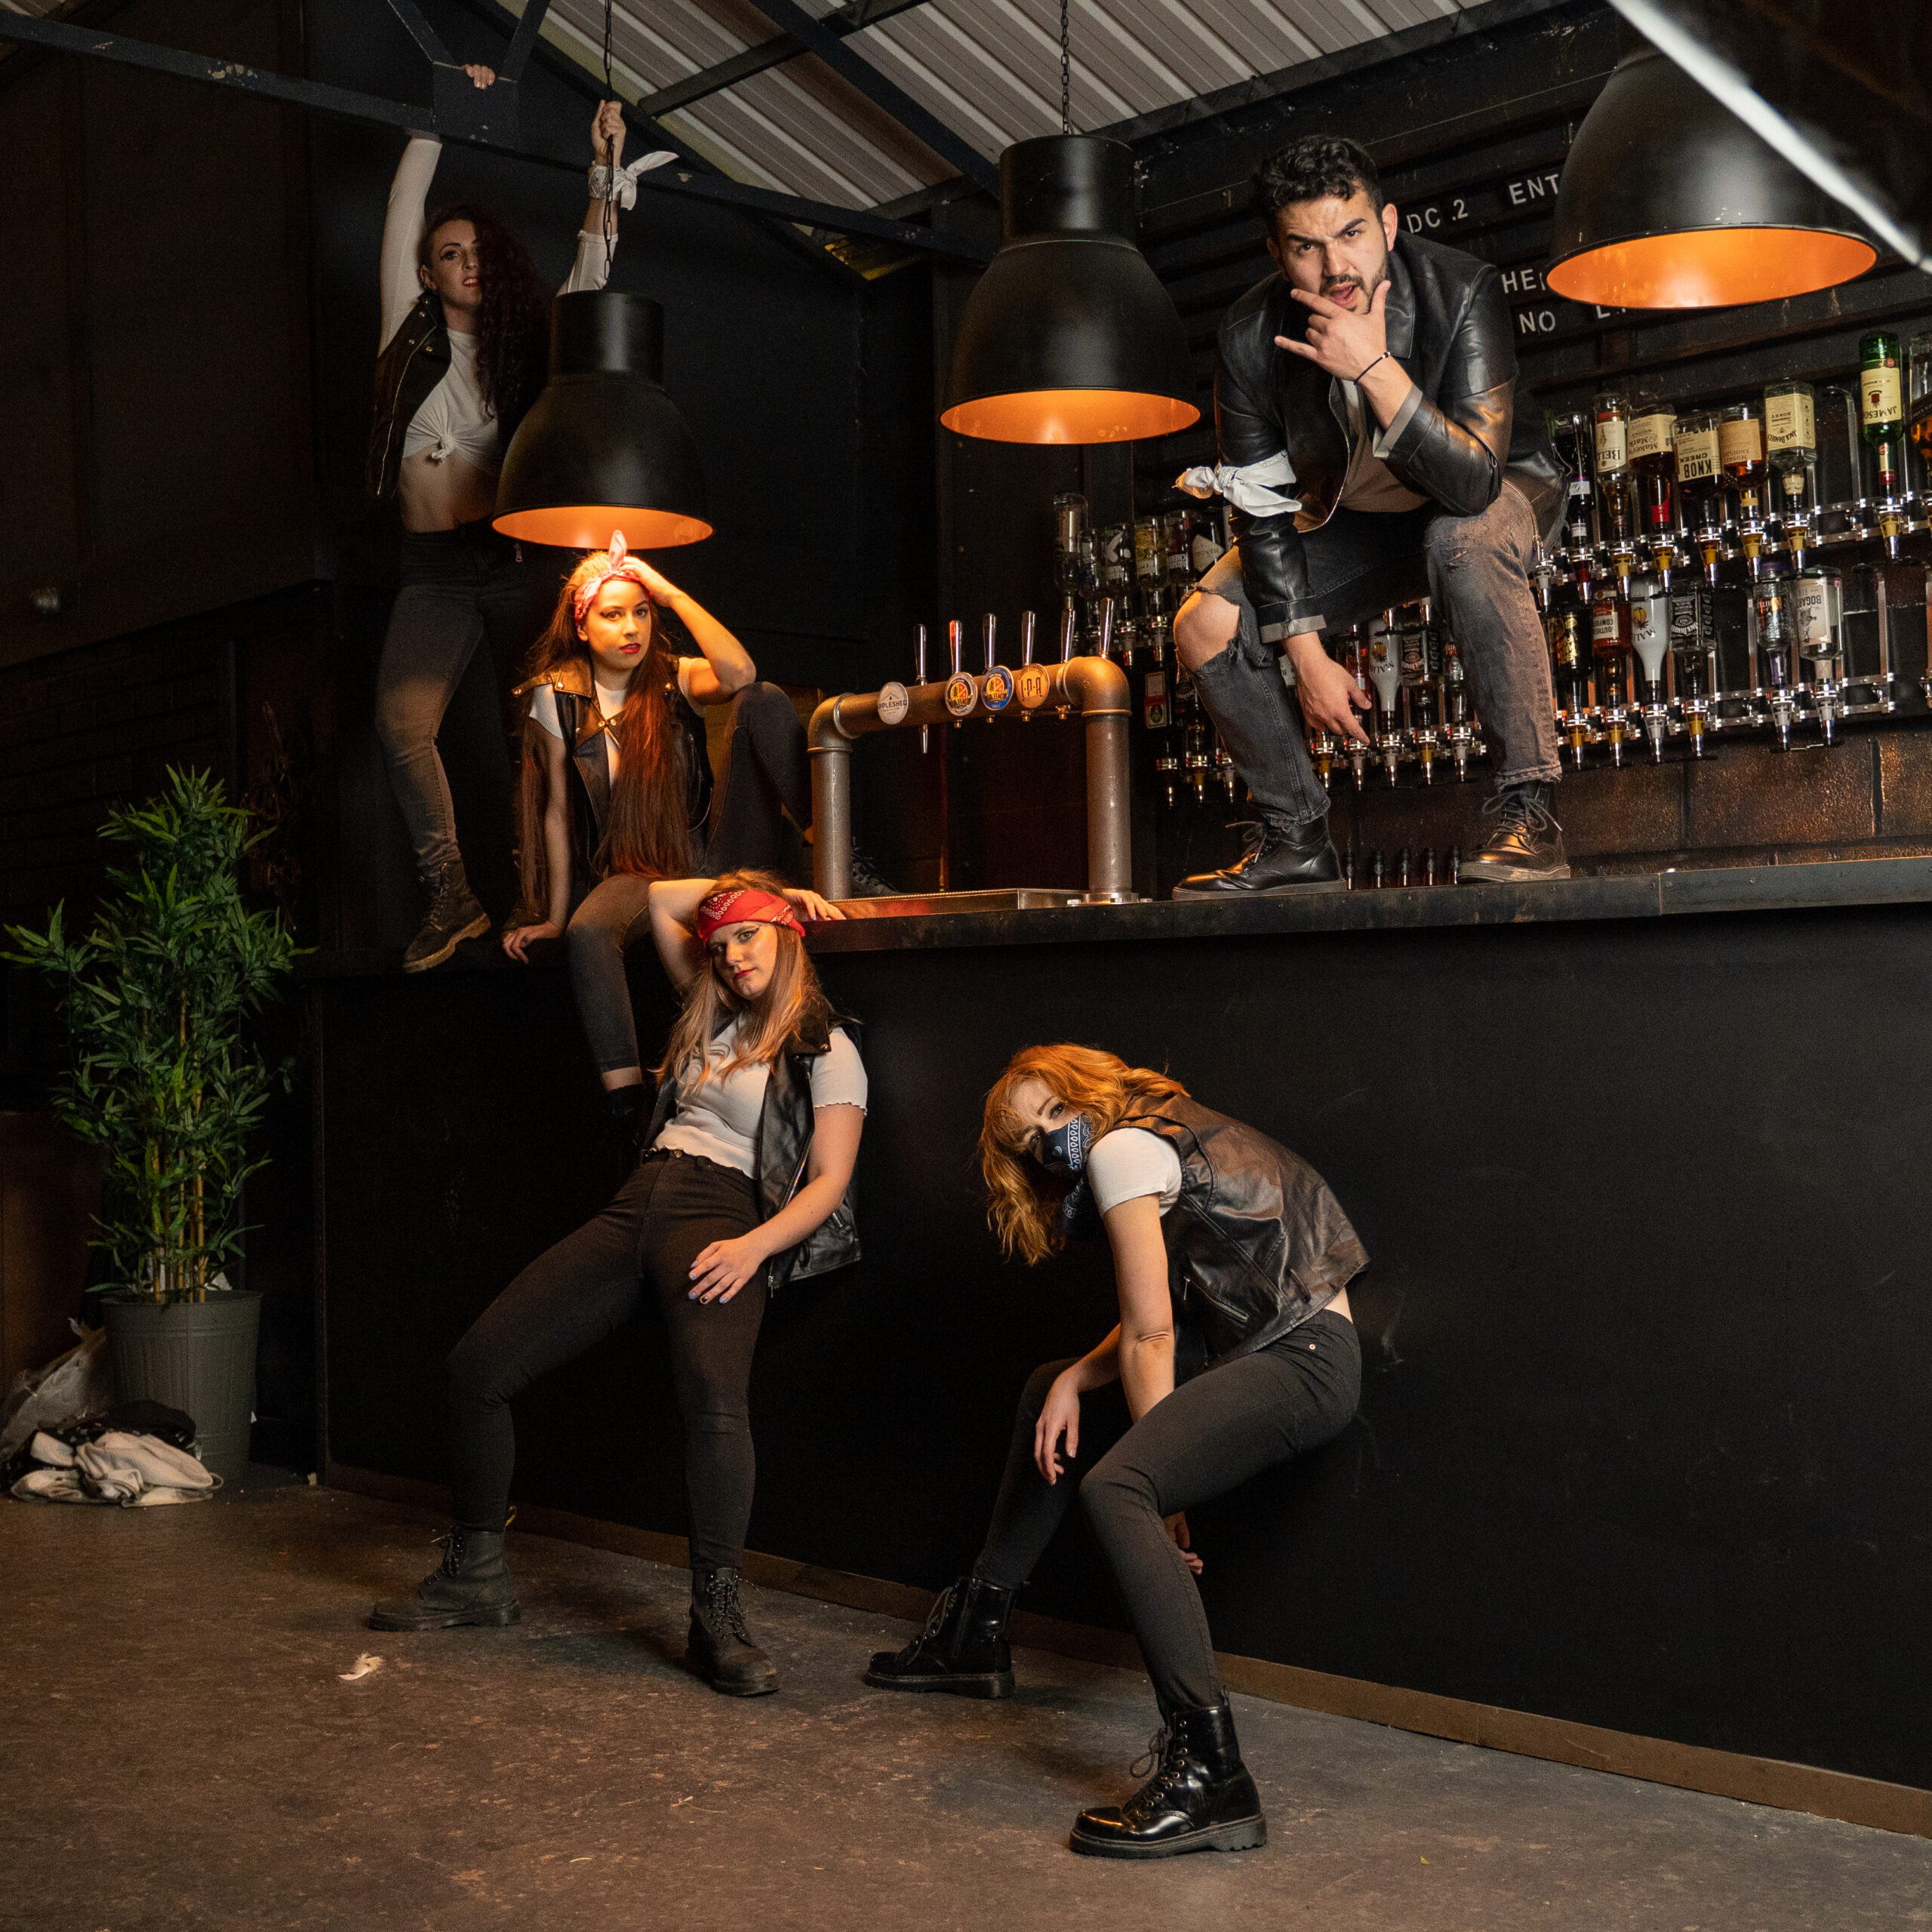 Dancers in a bar